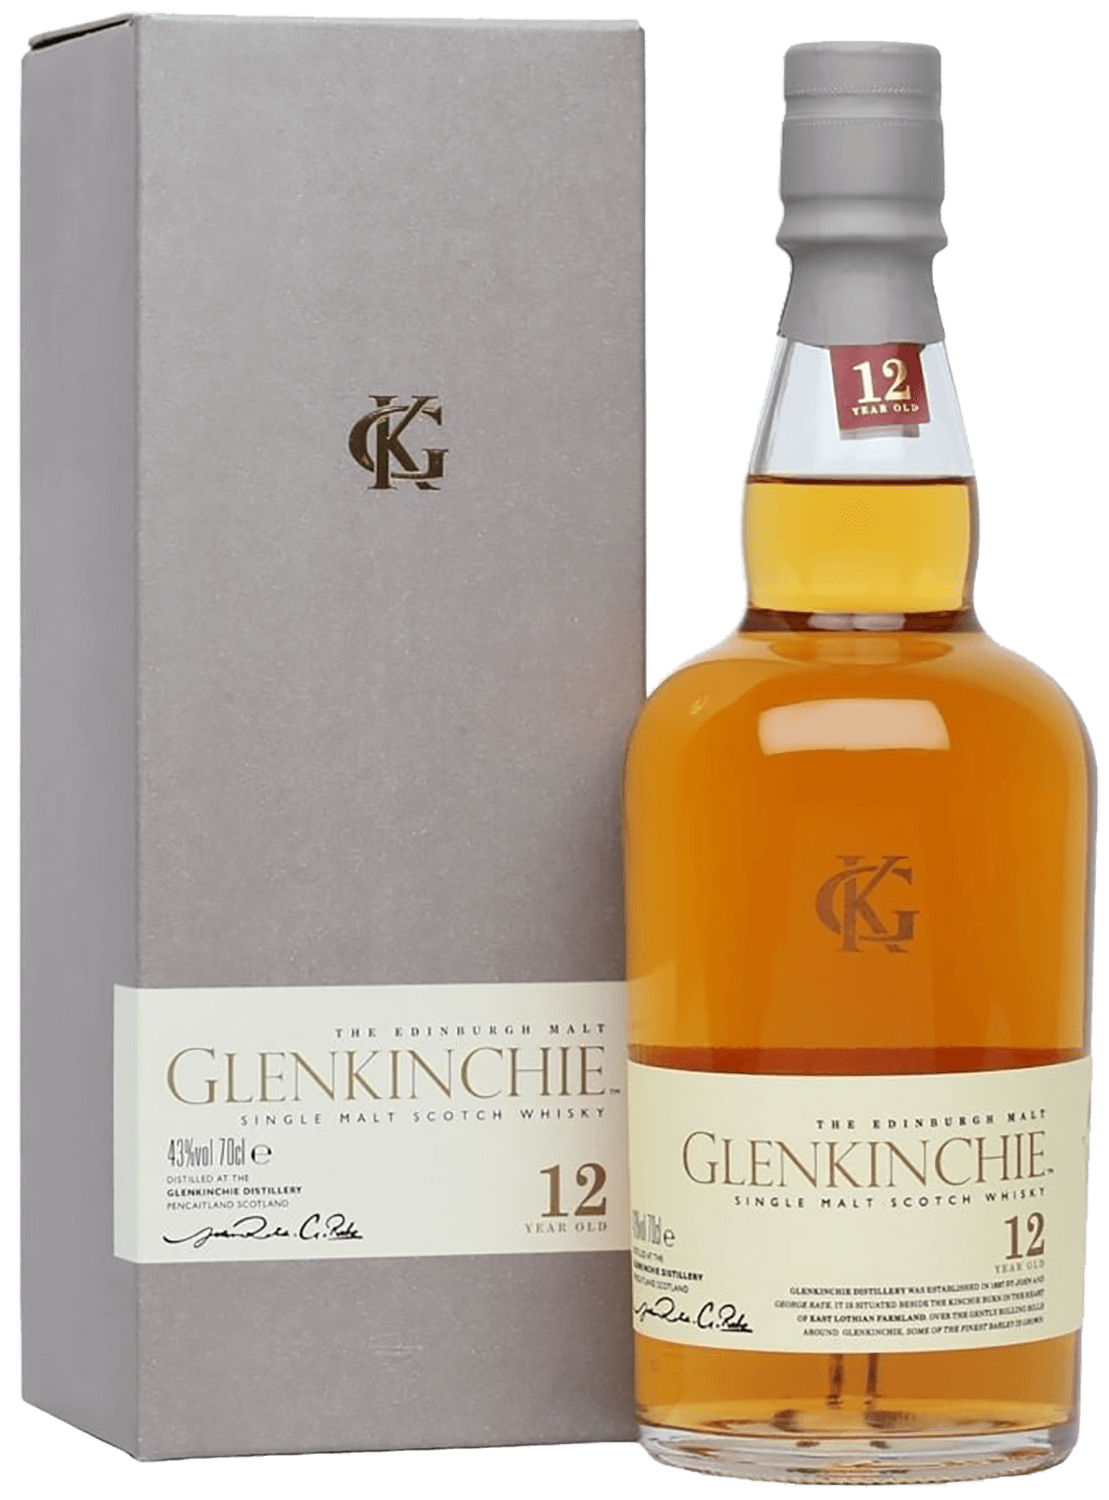 Glenkinchie 12 y.o. single malt scotch whisky (gift box)